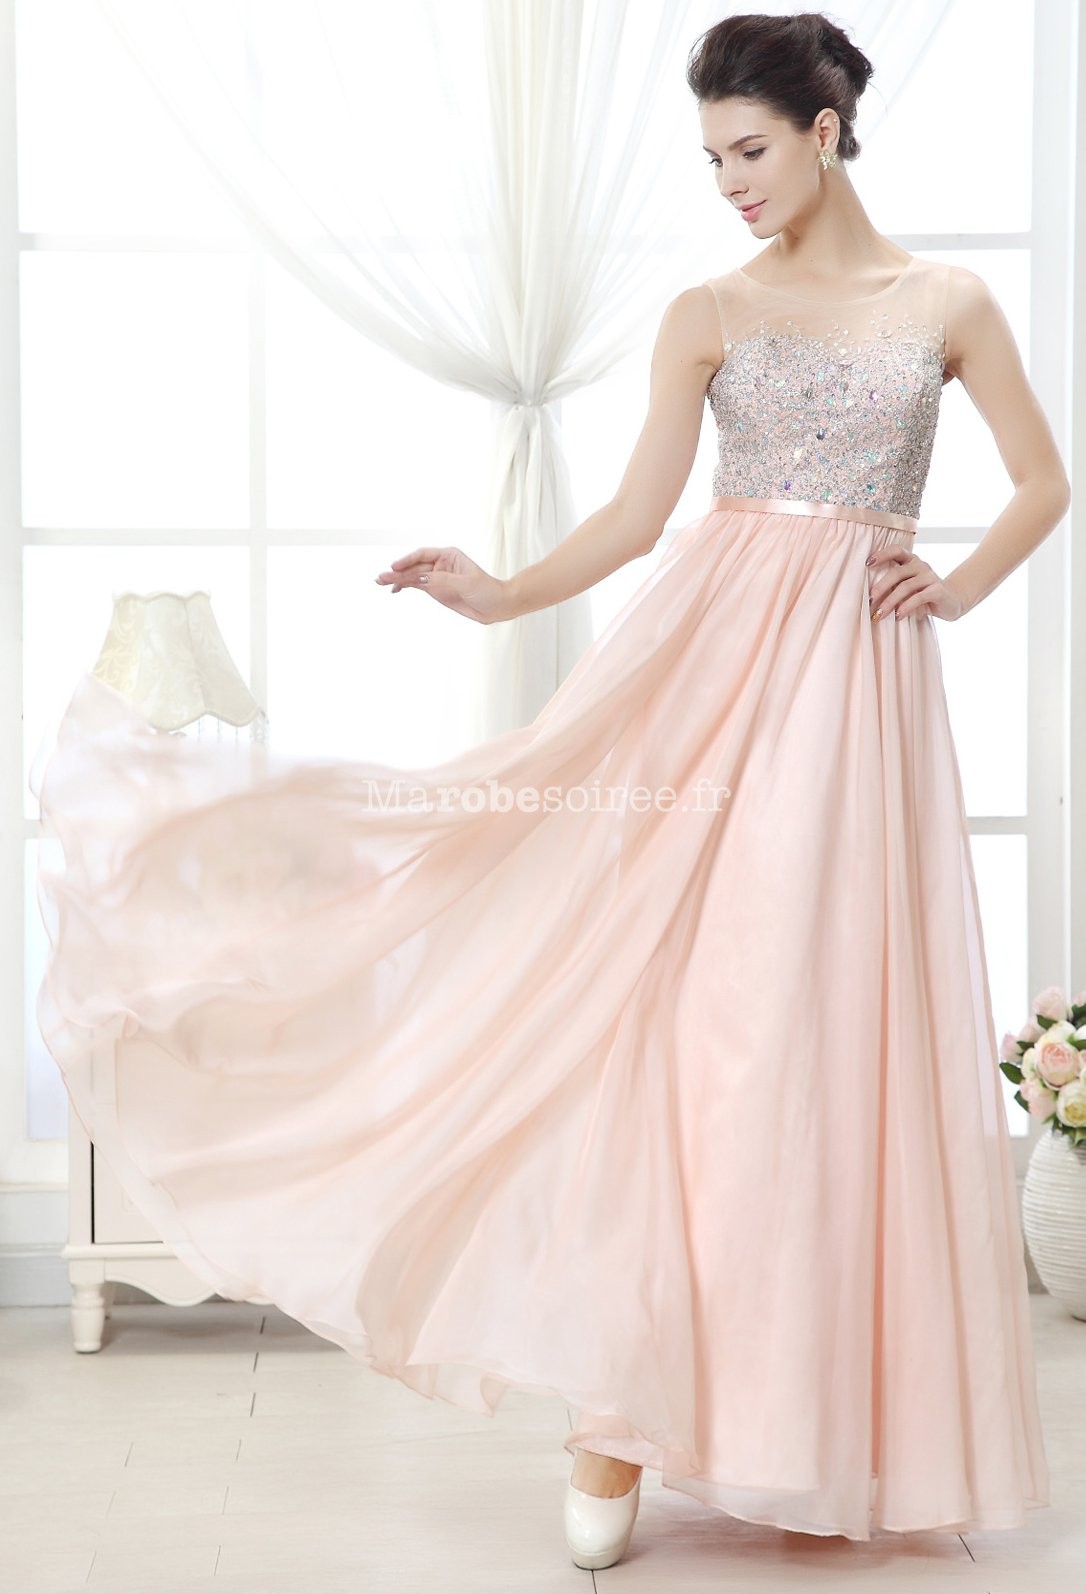 robe de mariage rose chic et elegante